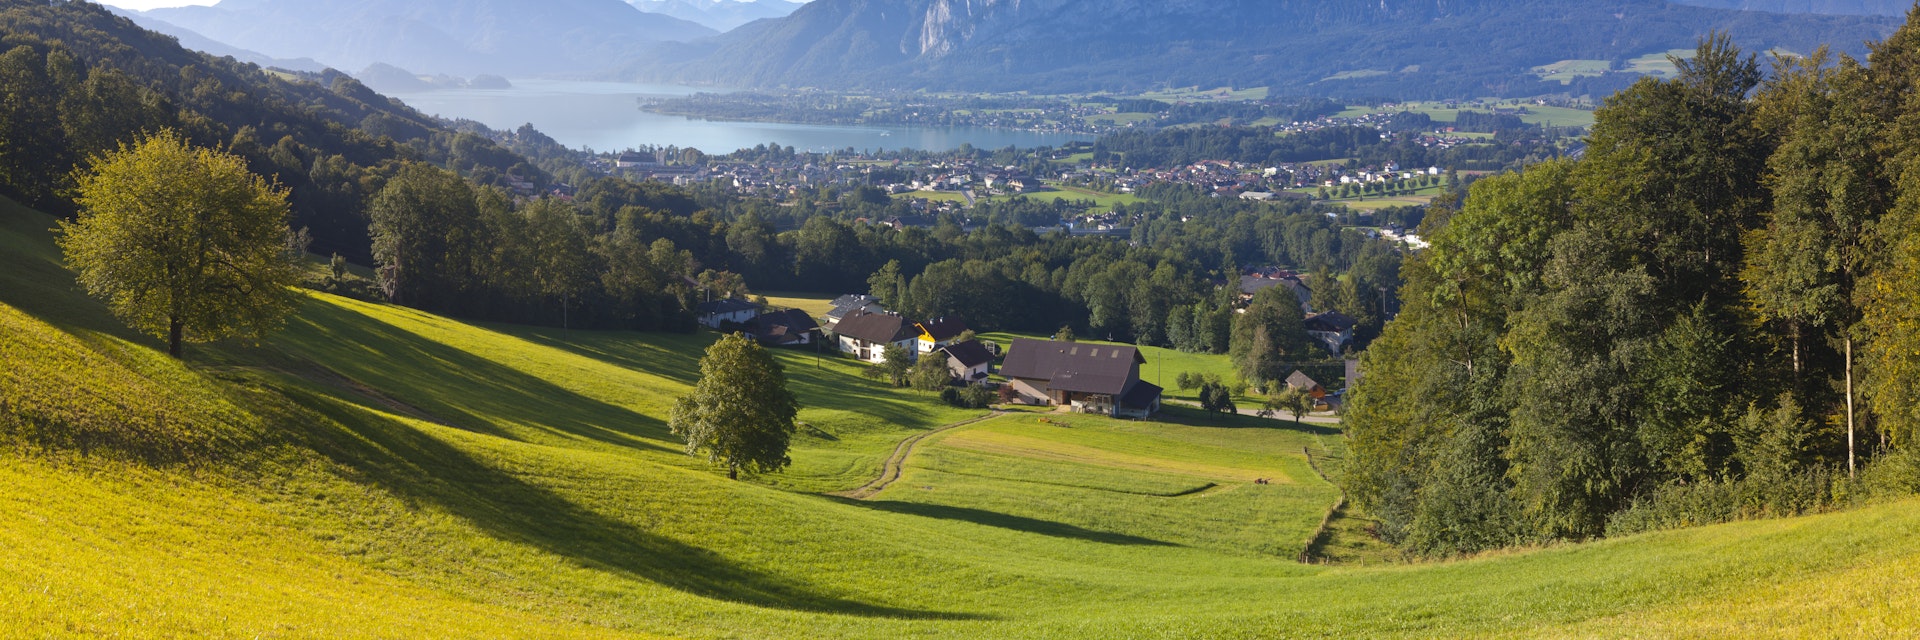 Austria, Oberosterreich, Mondsee Lake, Mondsee, Alpine Meadow